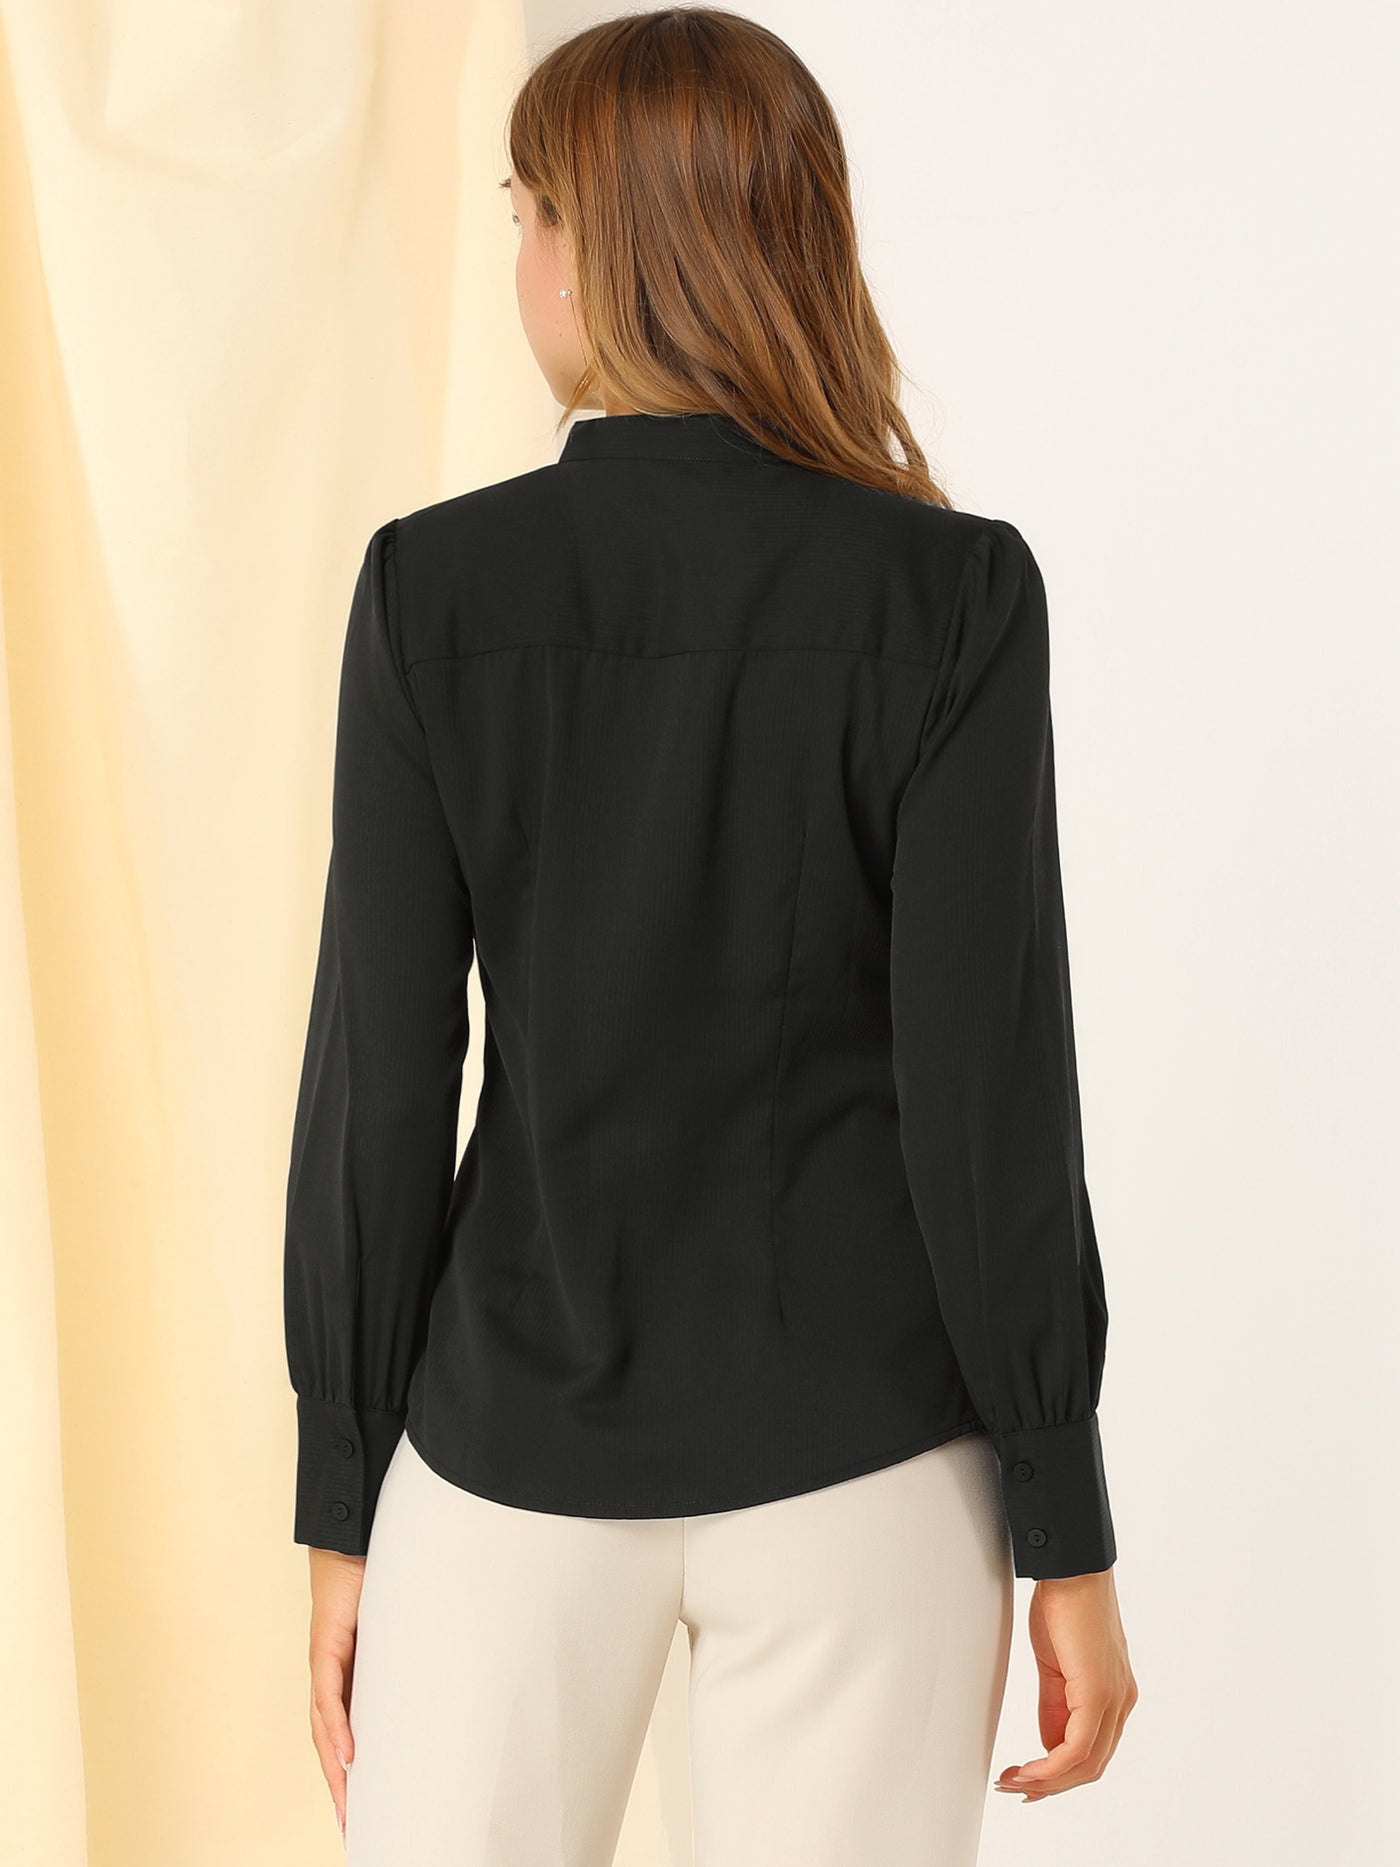 Allegra K Mandarin Collar Office Top Long Sleeve Button Down Shirt